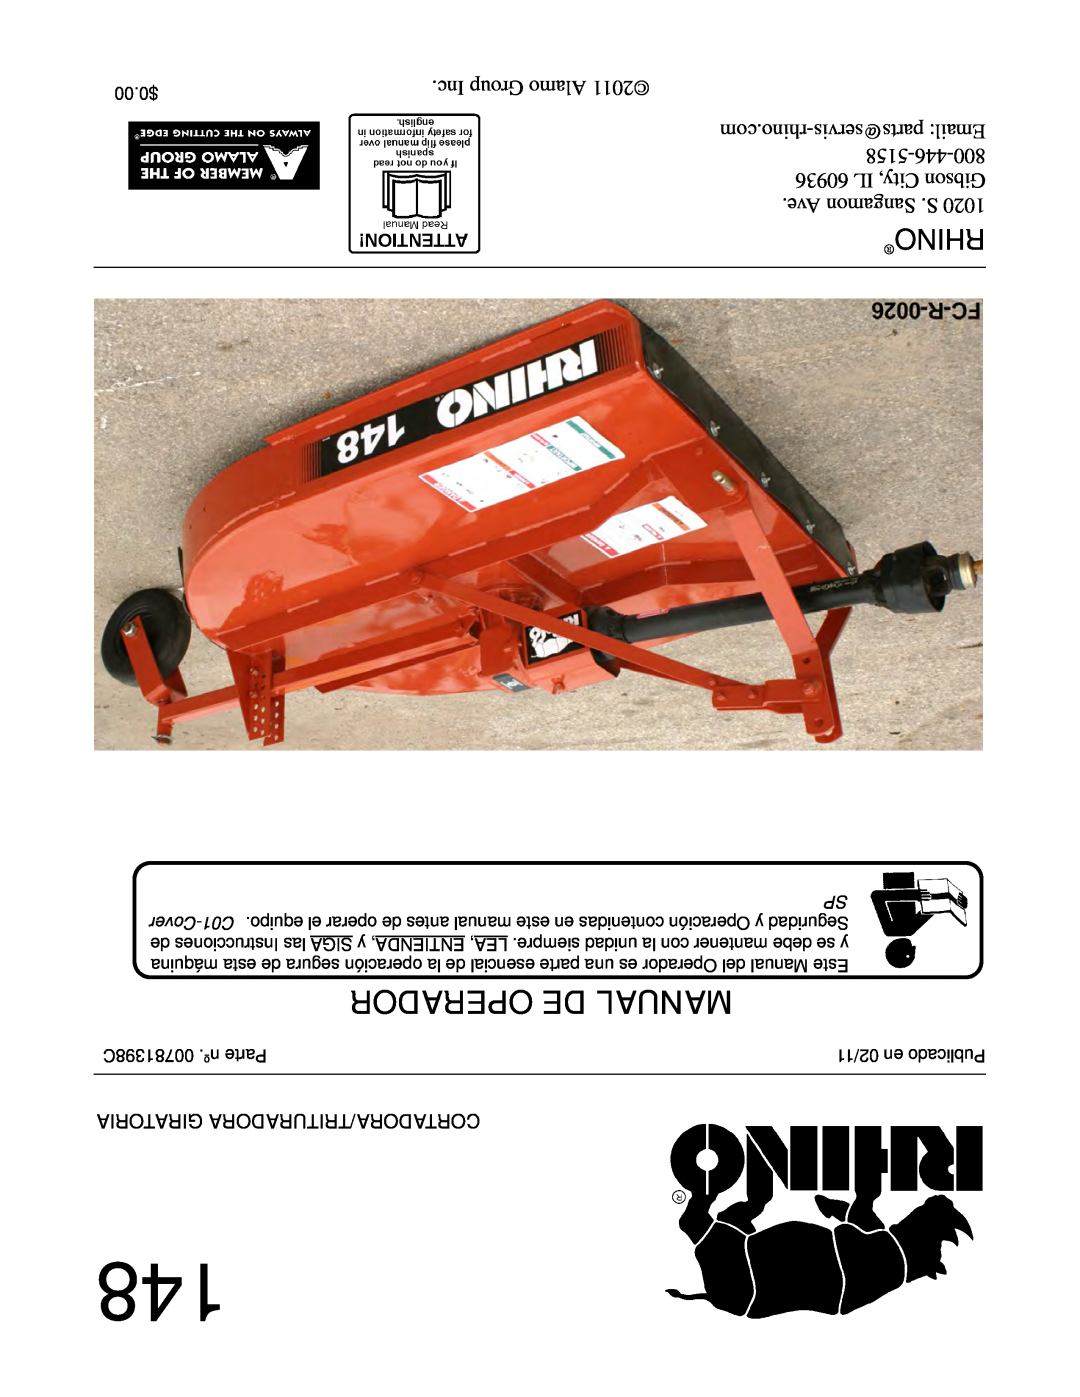 Rhino Mounts 148 manual Operador De Manual, Rhino, Giratoria Cortadora/Trituradora, 00781398C .nº Parte, 02/11 en Publicado 